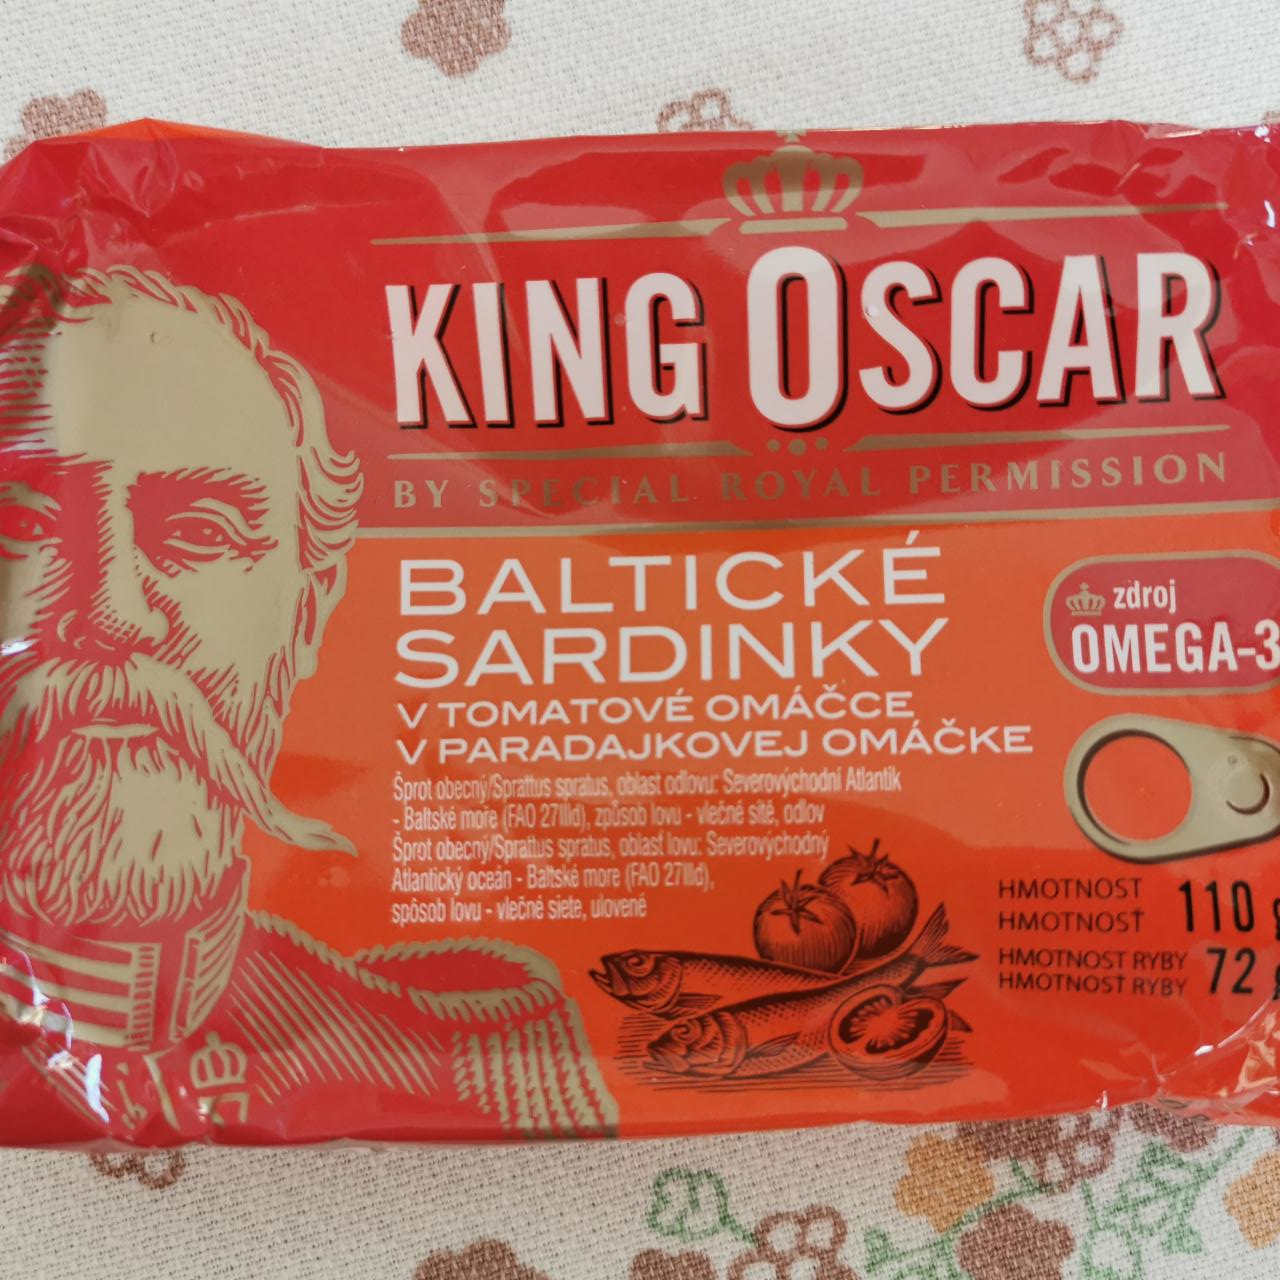 Fotografie - Baltické sardinky v tomatové omáčce King Oscar